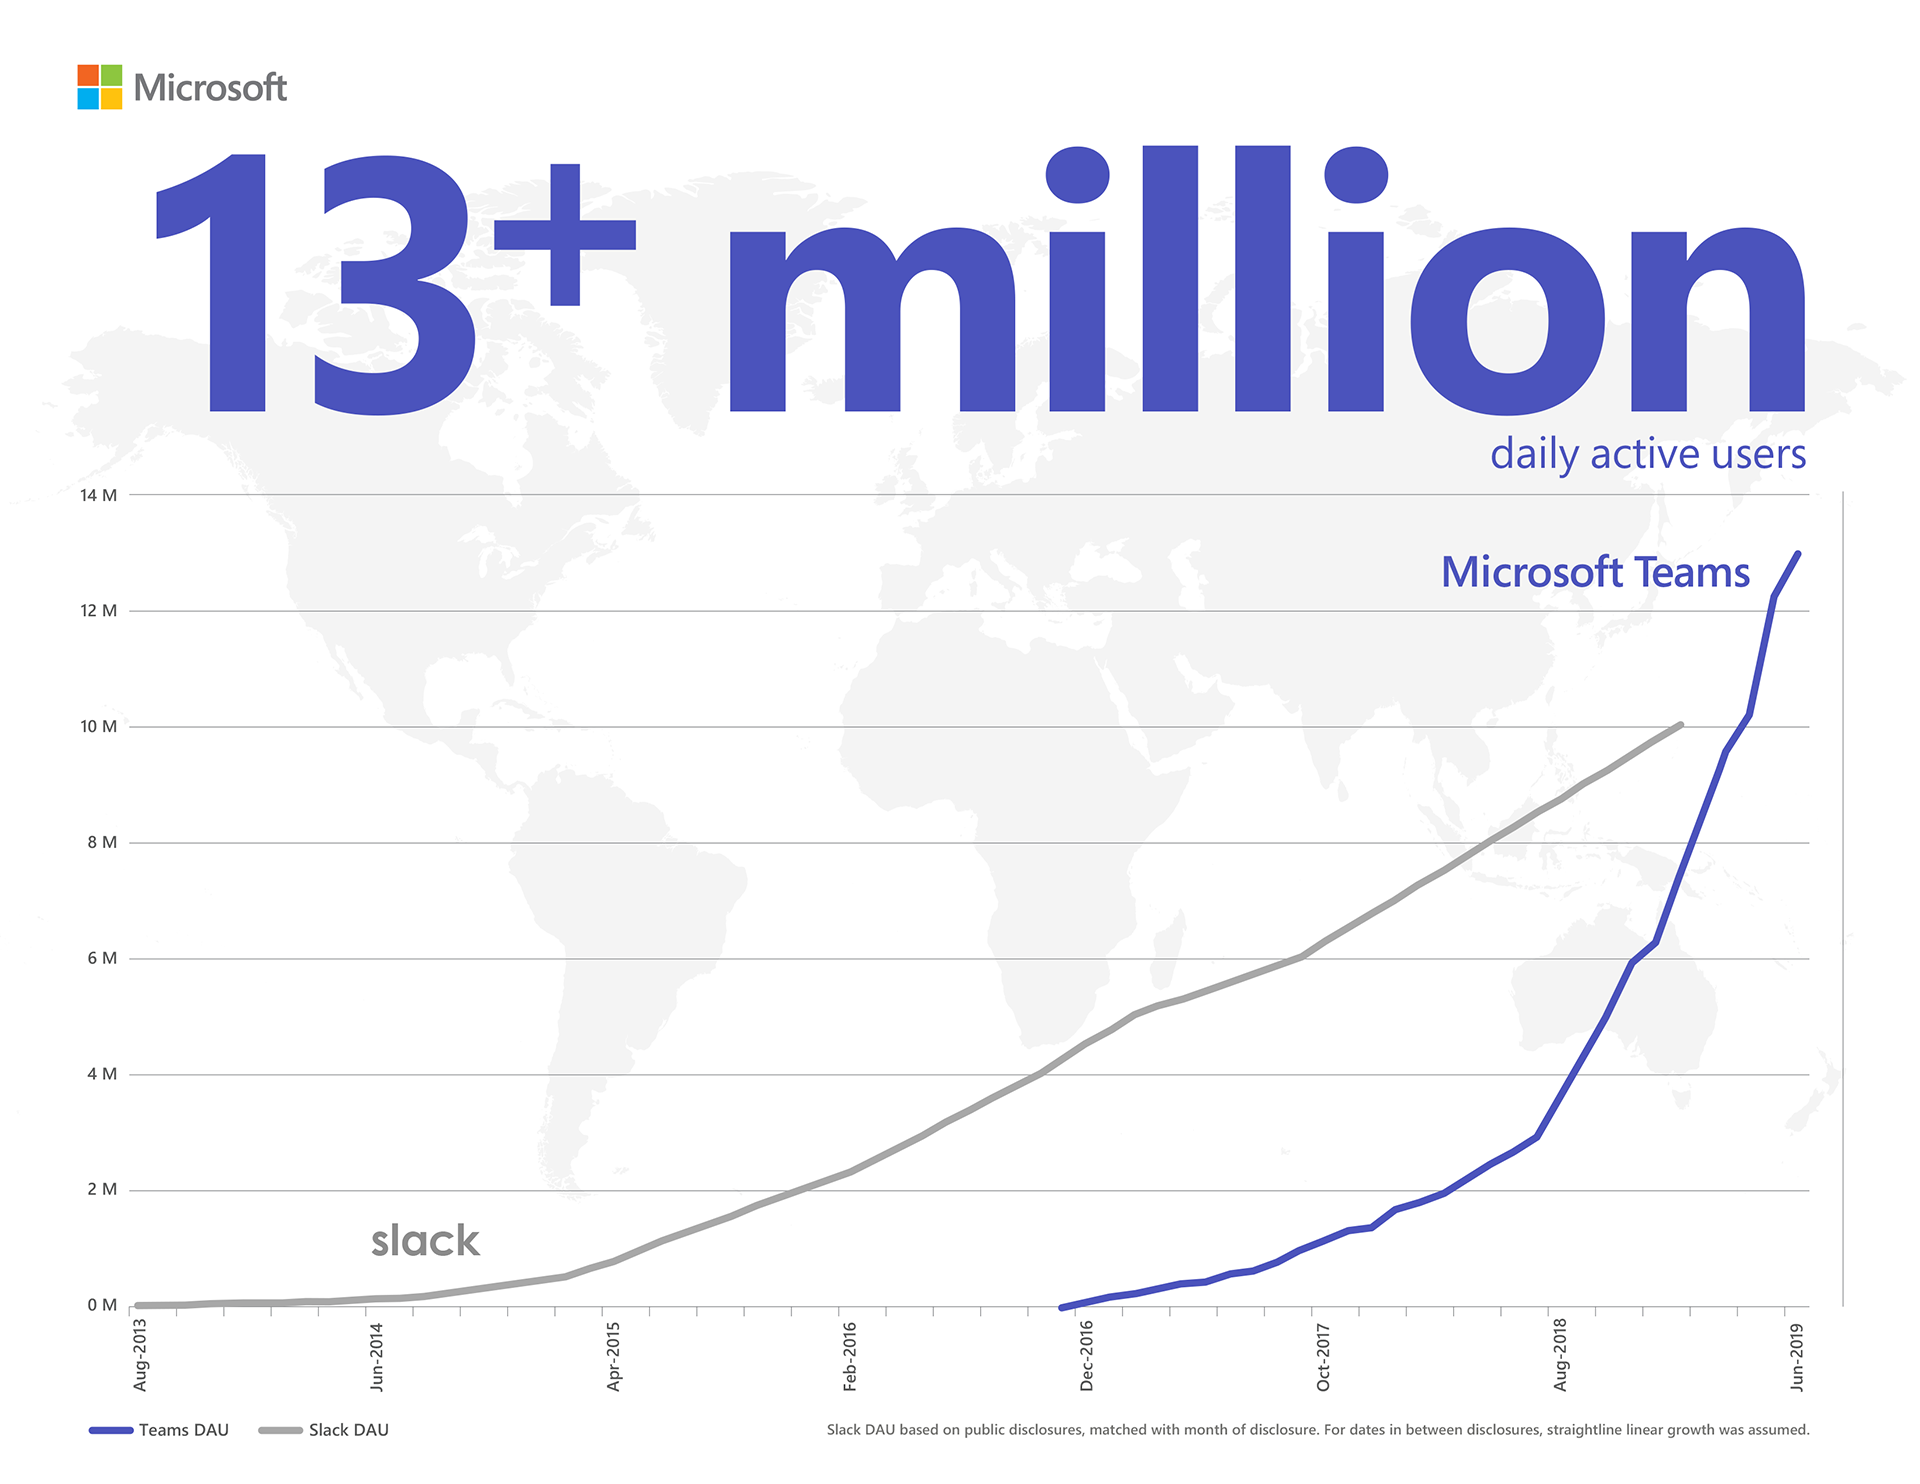 Інфографіка, що показує, як Microsoft Teams випереджає Slack у щоденній роботі й має понад 13 мільйонів користувачів. Кількість щоденних активних користувачів Slack указано відповідно до загальнодоступних даних за відповідний місяць. Дані подано з припущенням, що протягом періодів між обнародуваннями цих відомостей спостерігалося лінійне зростання.